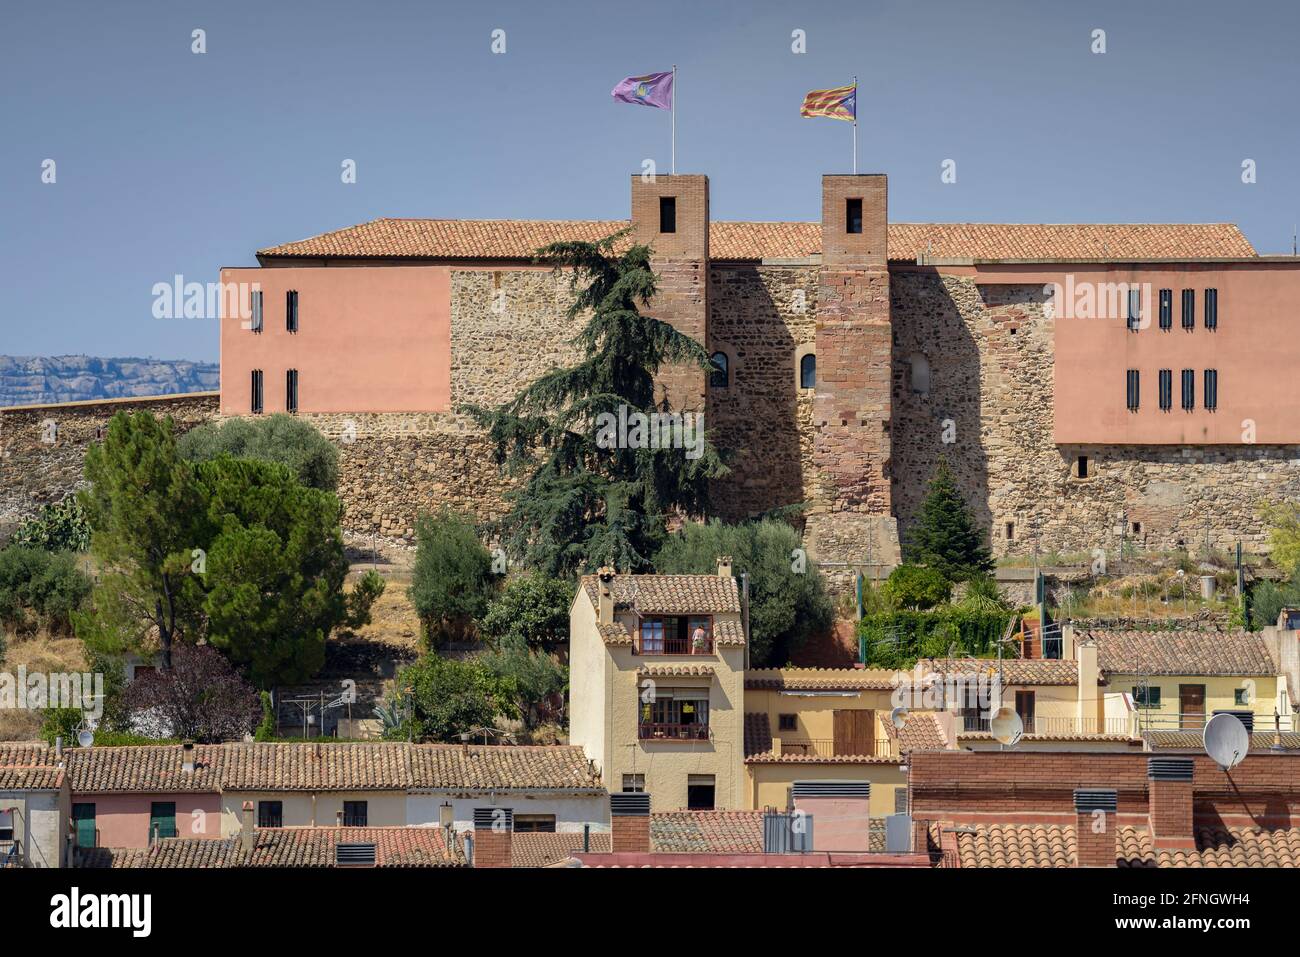 Vista del castello di Falset (Priorat, Tarragona, Catalogna, Spagna) ESP: Vista del castillo de Falset (Priorat, Tarragona, Cataluña, España) Foto Stock